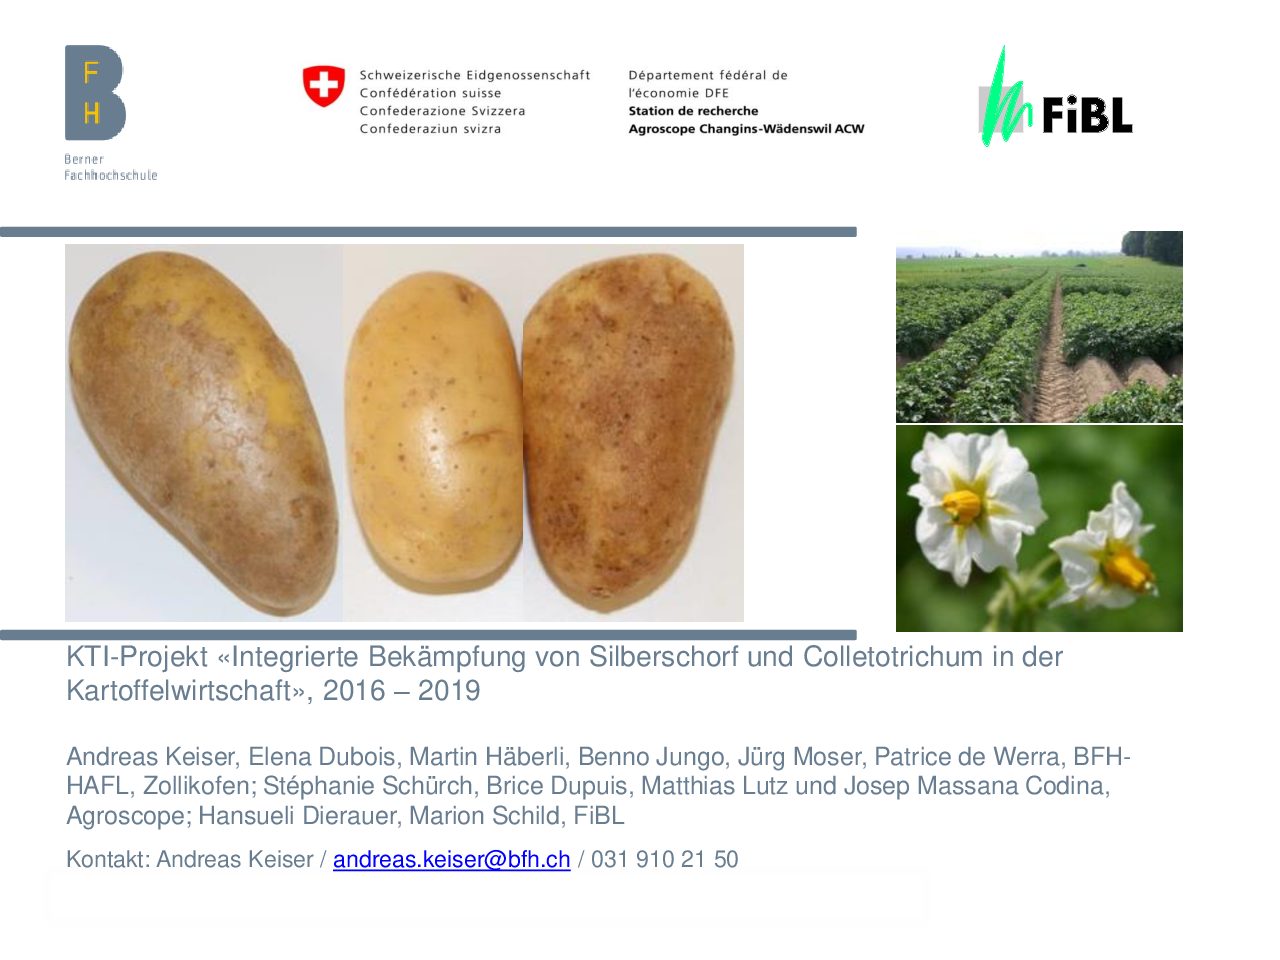 KTI-Projekt «Integrierte Bekämpfung von Silberschorf und Colletotrichum in der Kartoffelwirtschaft» 2016 – 2019